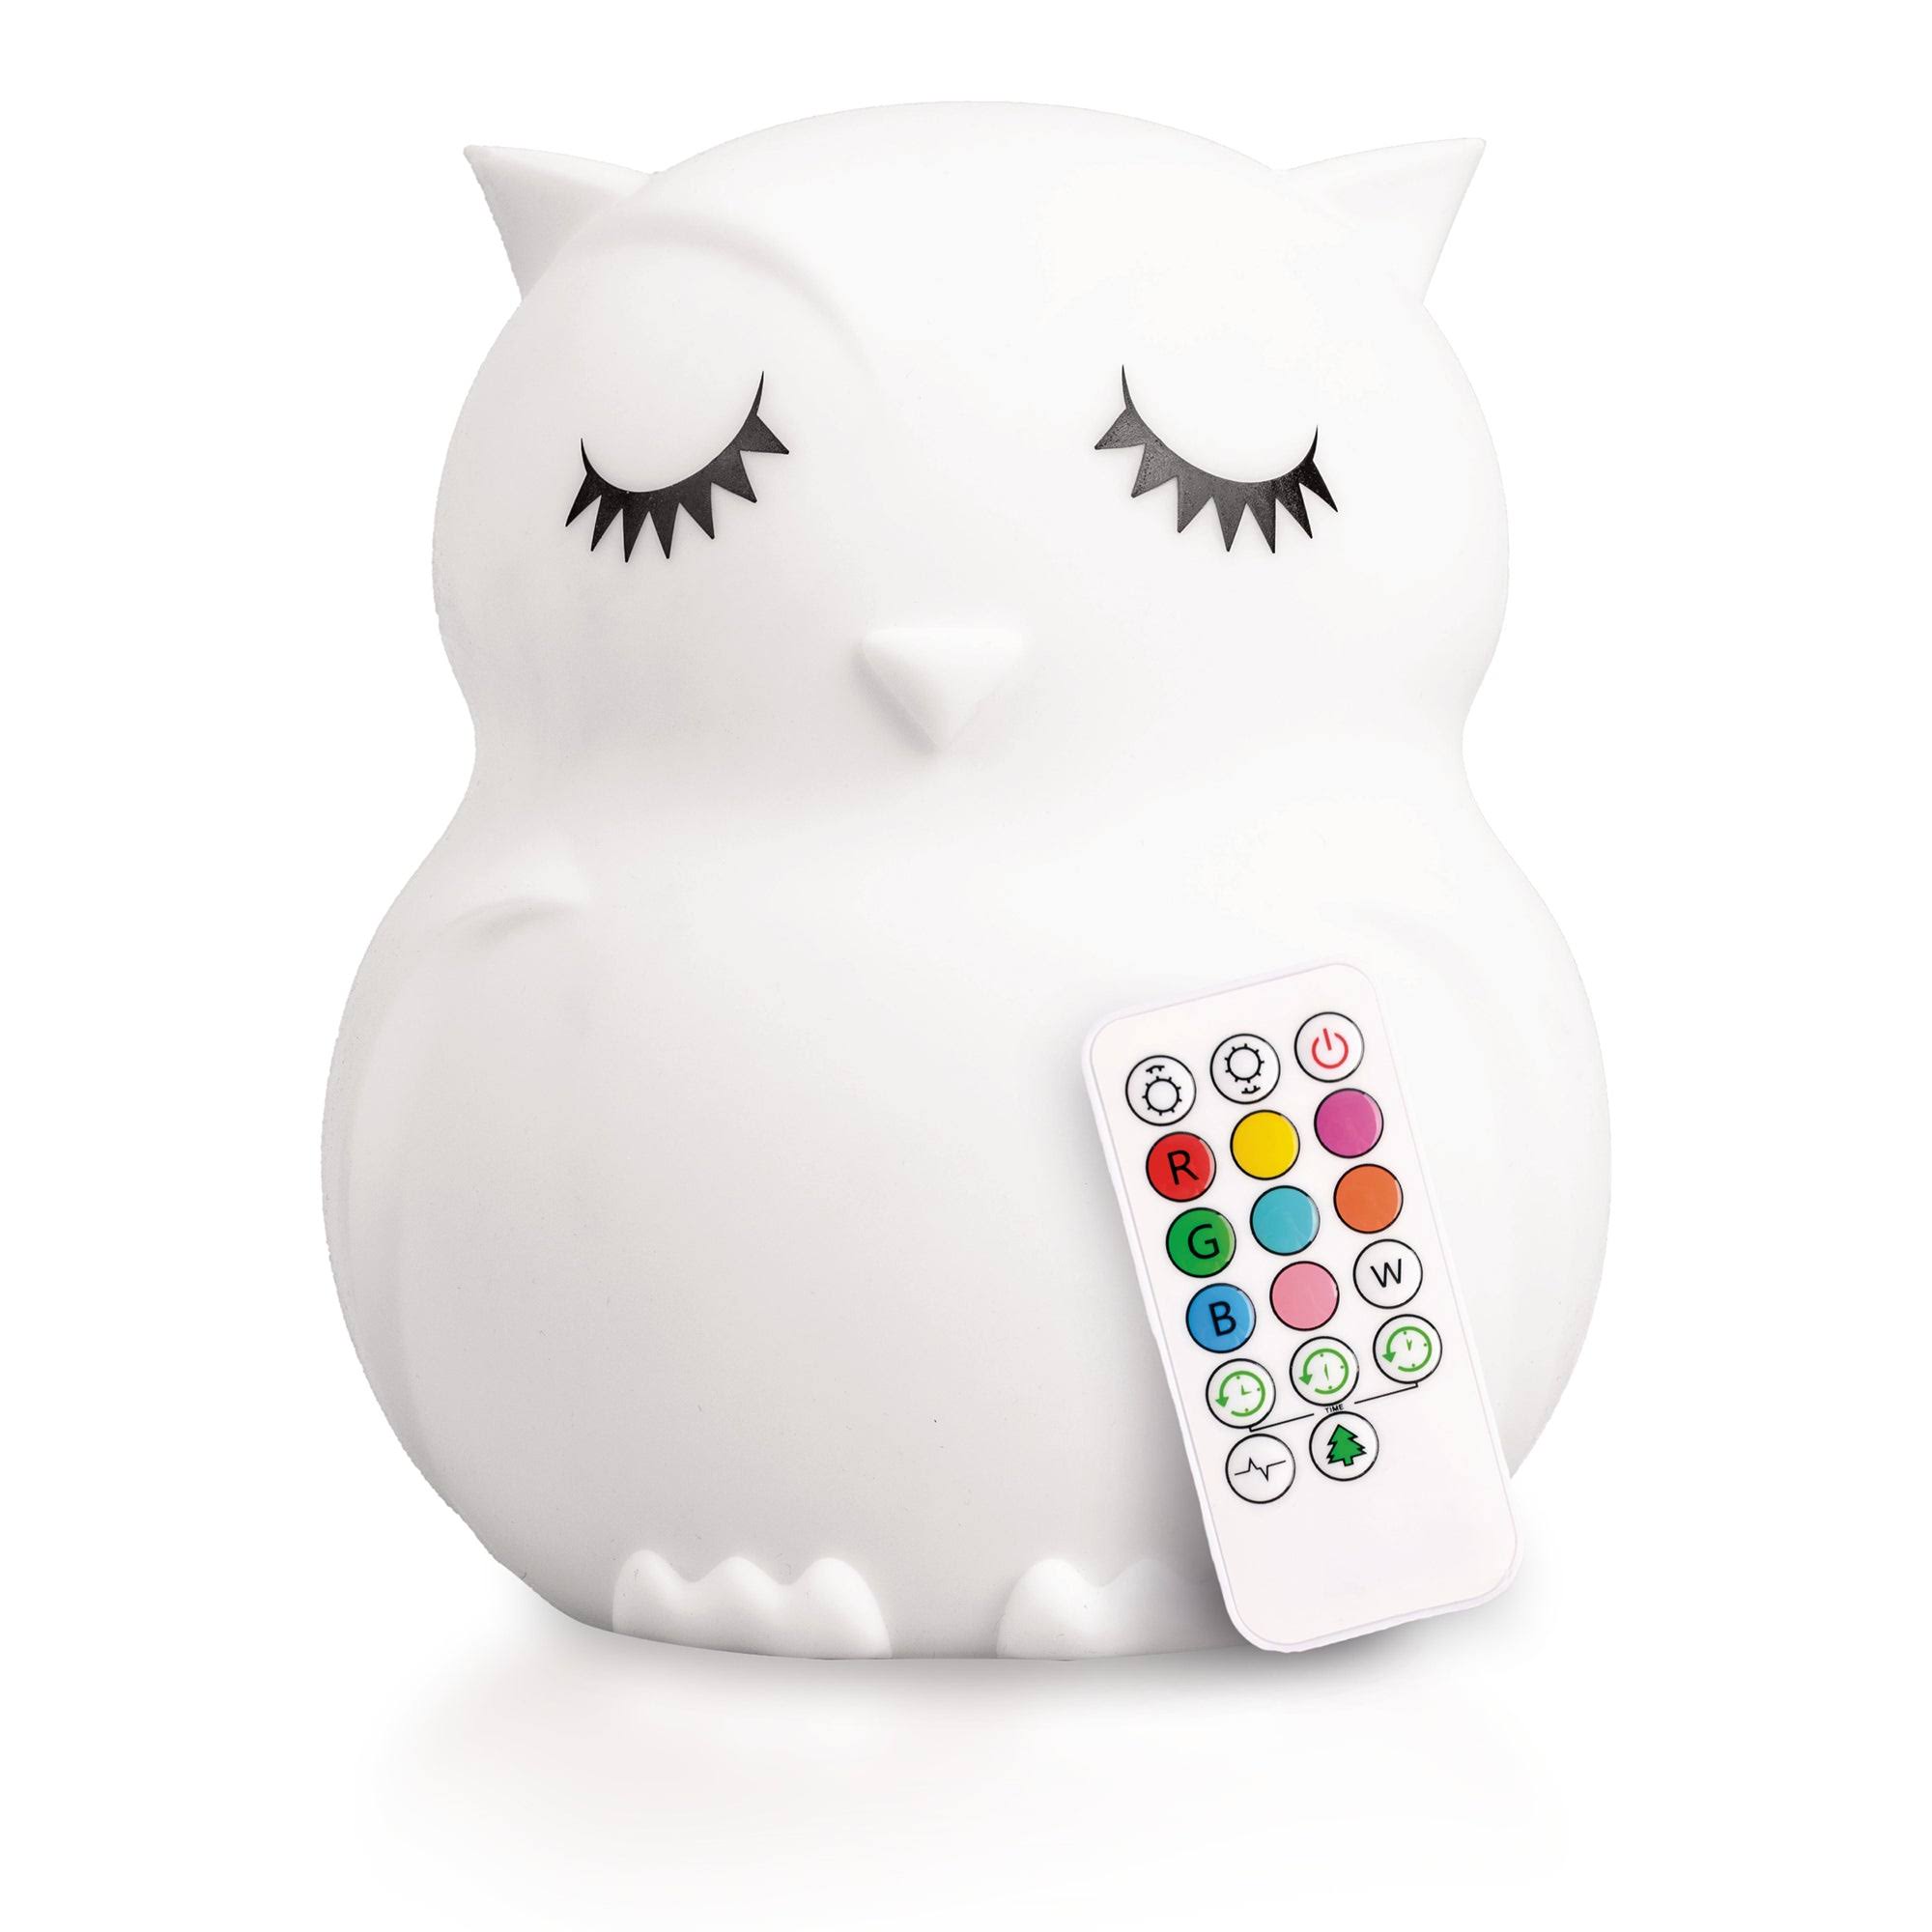 LumiPets Owl Night Light & Remote